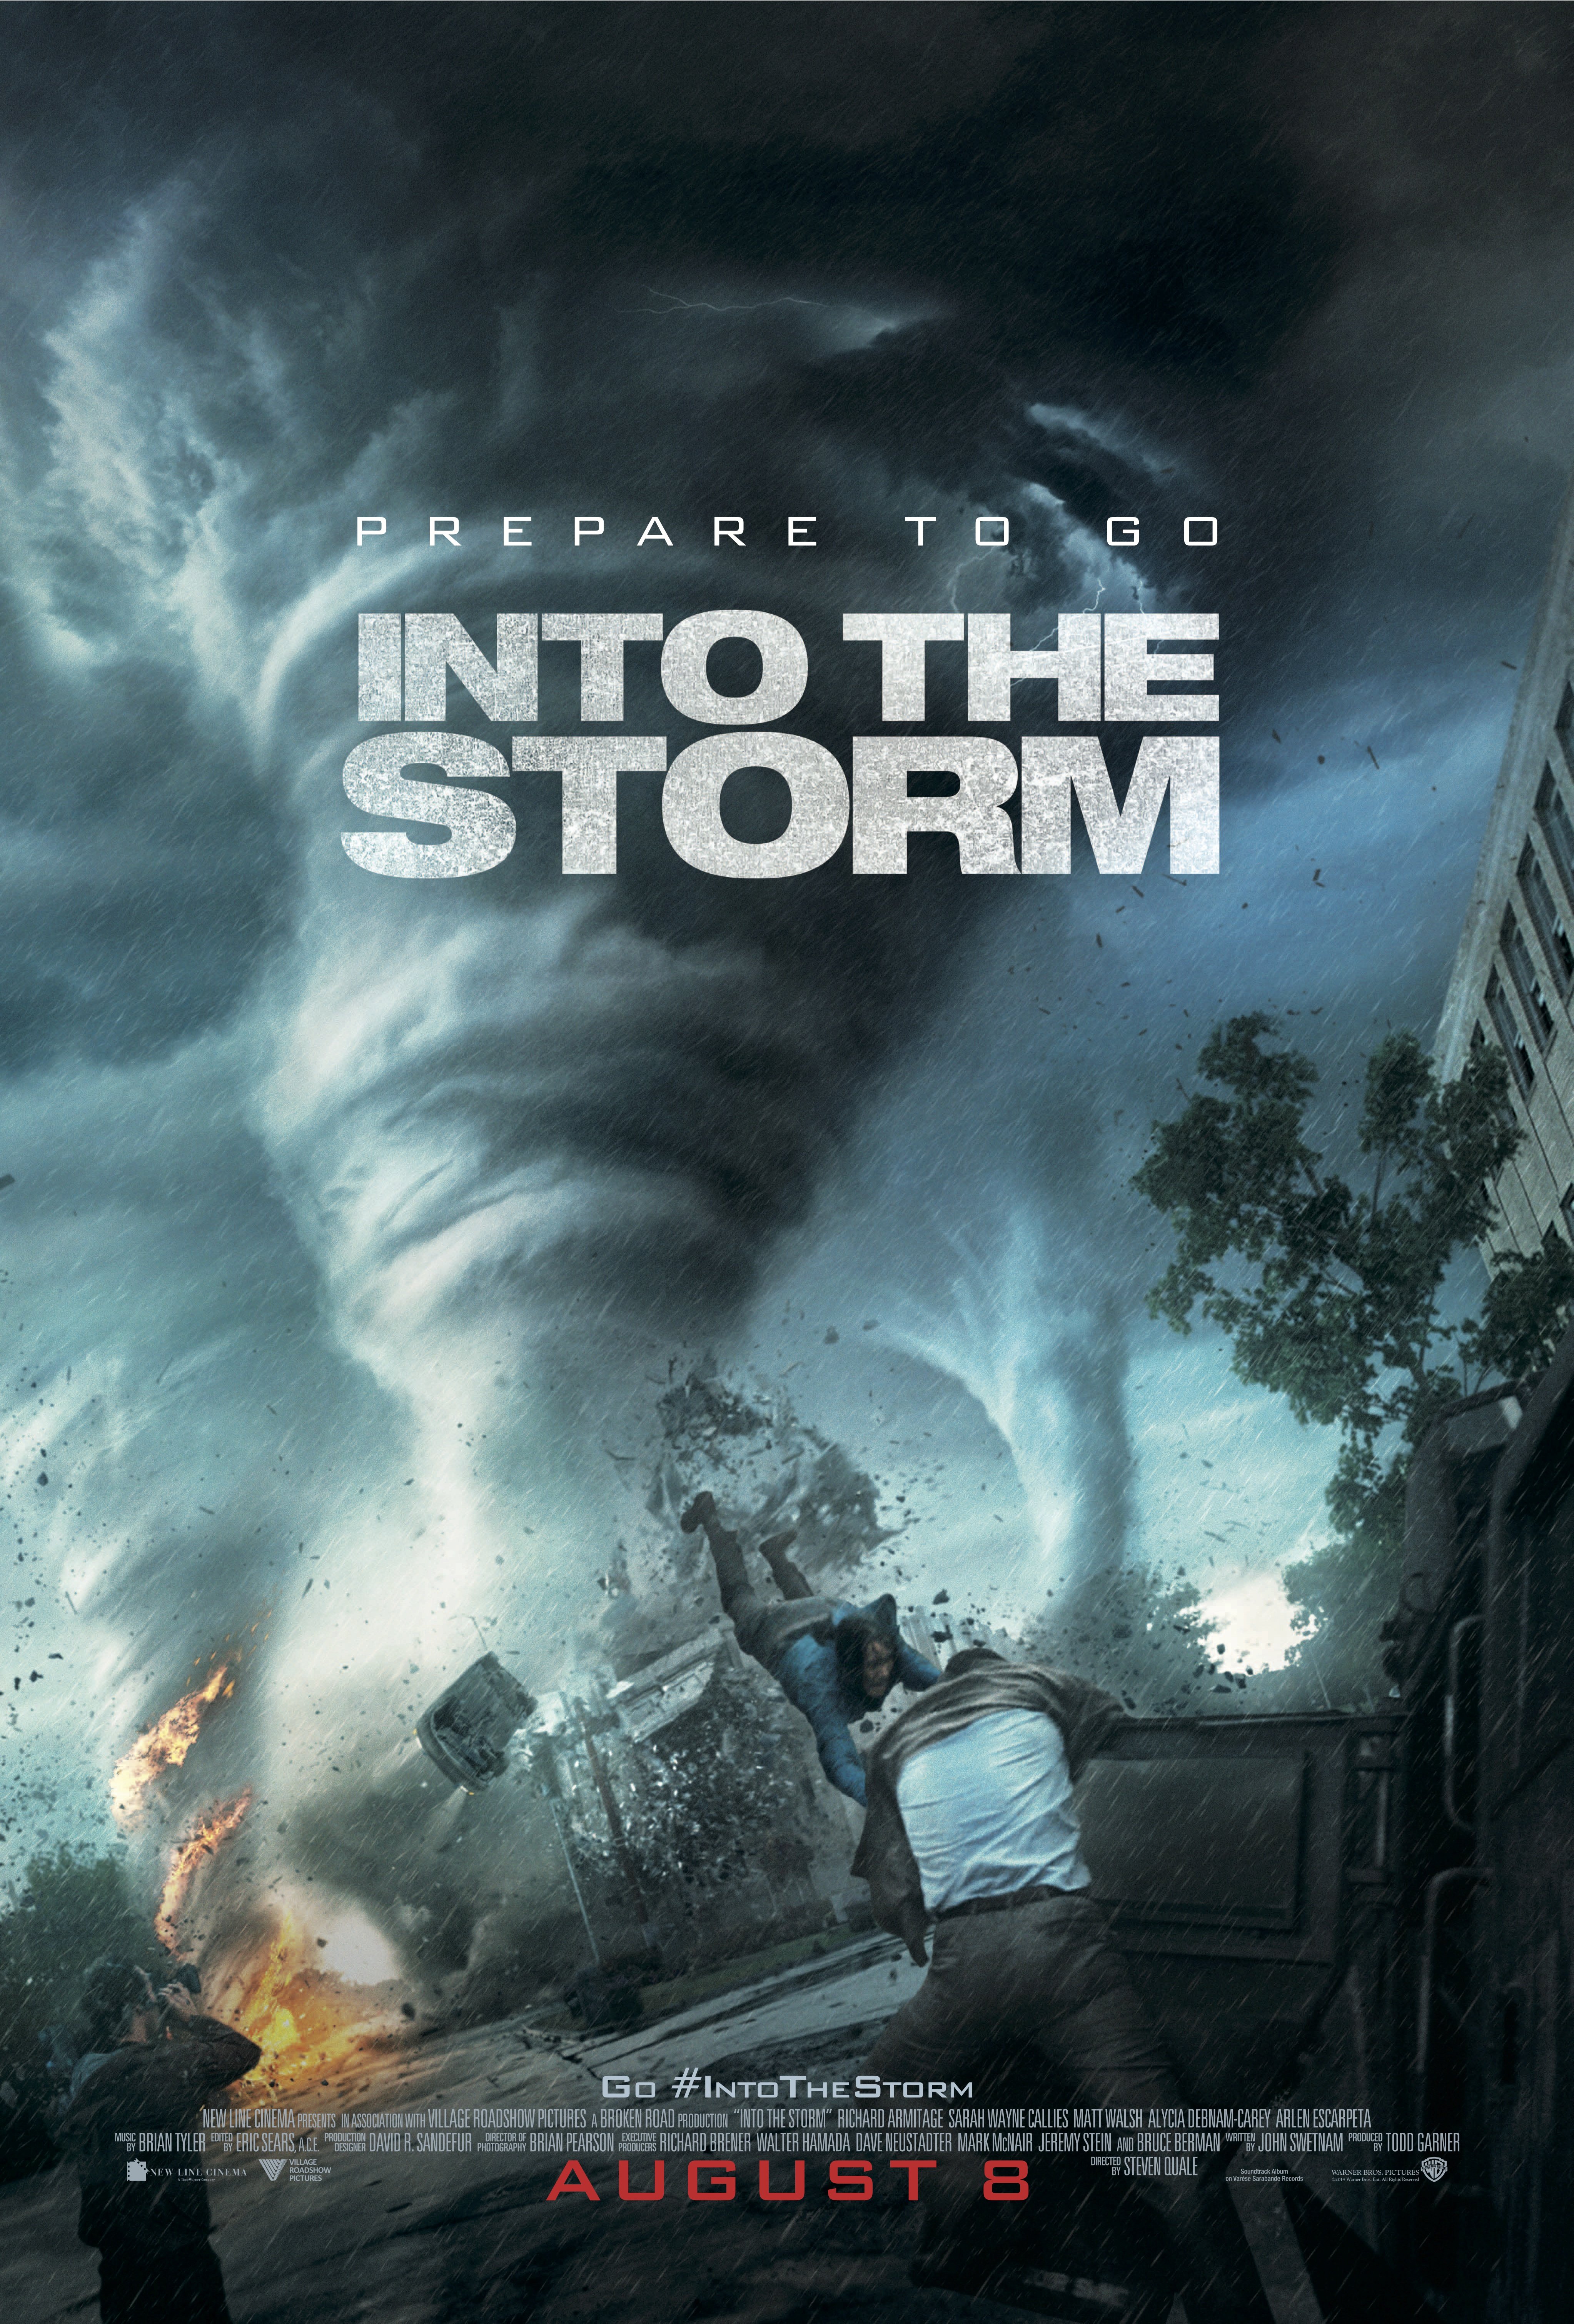 Poster of the movie Dans la tempête